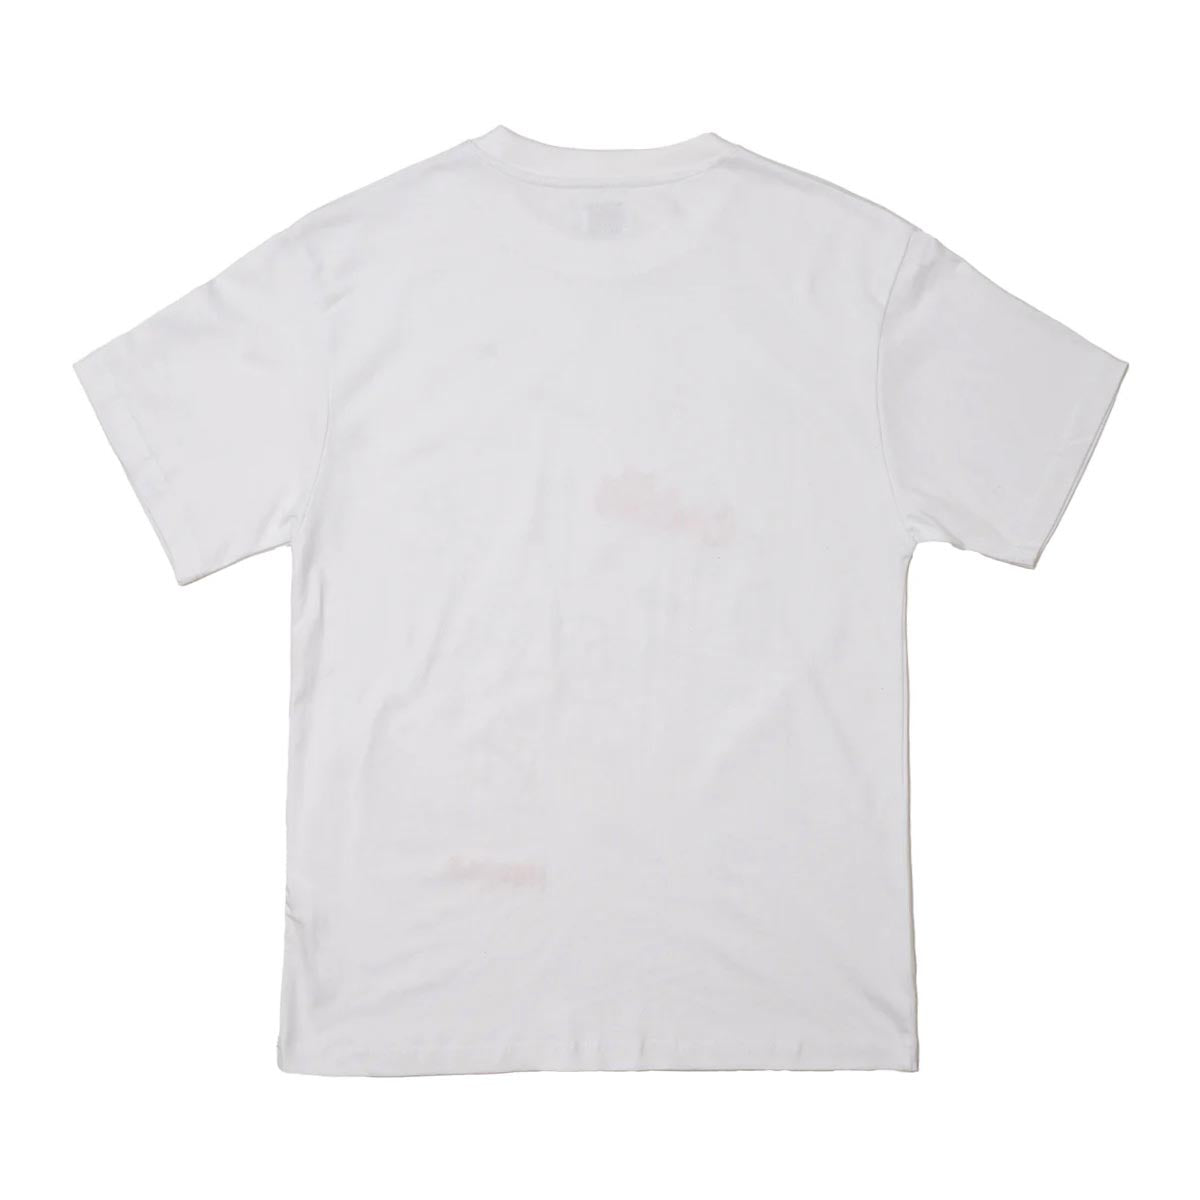 Hoddle Medusa T-Shirt - White image 4